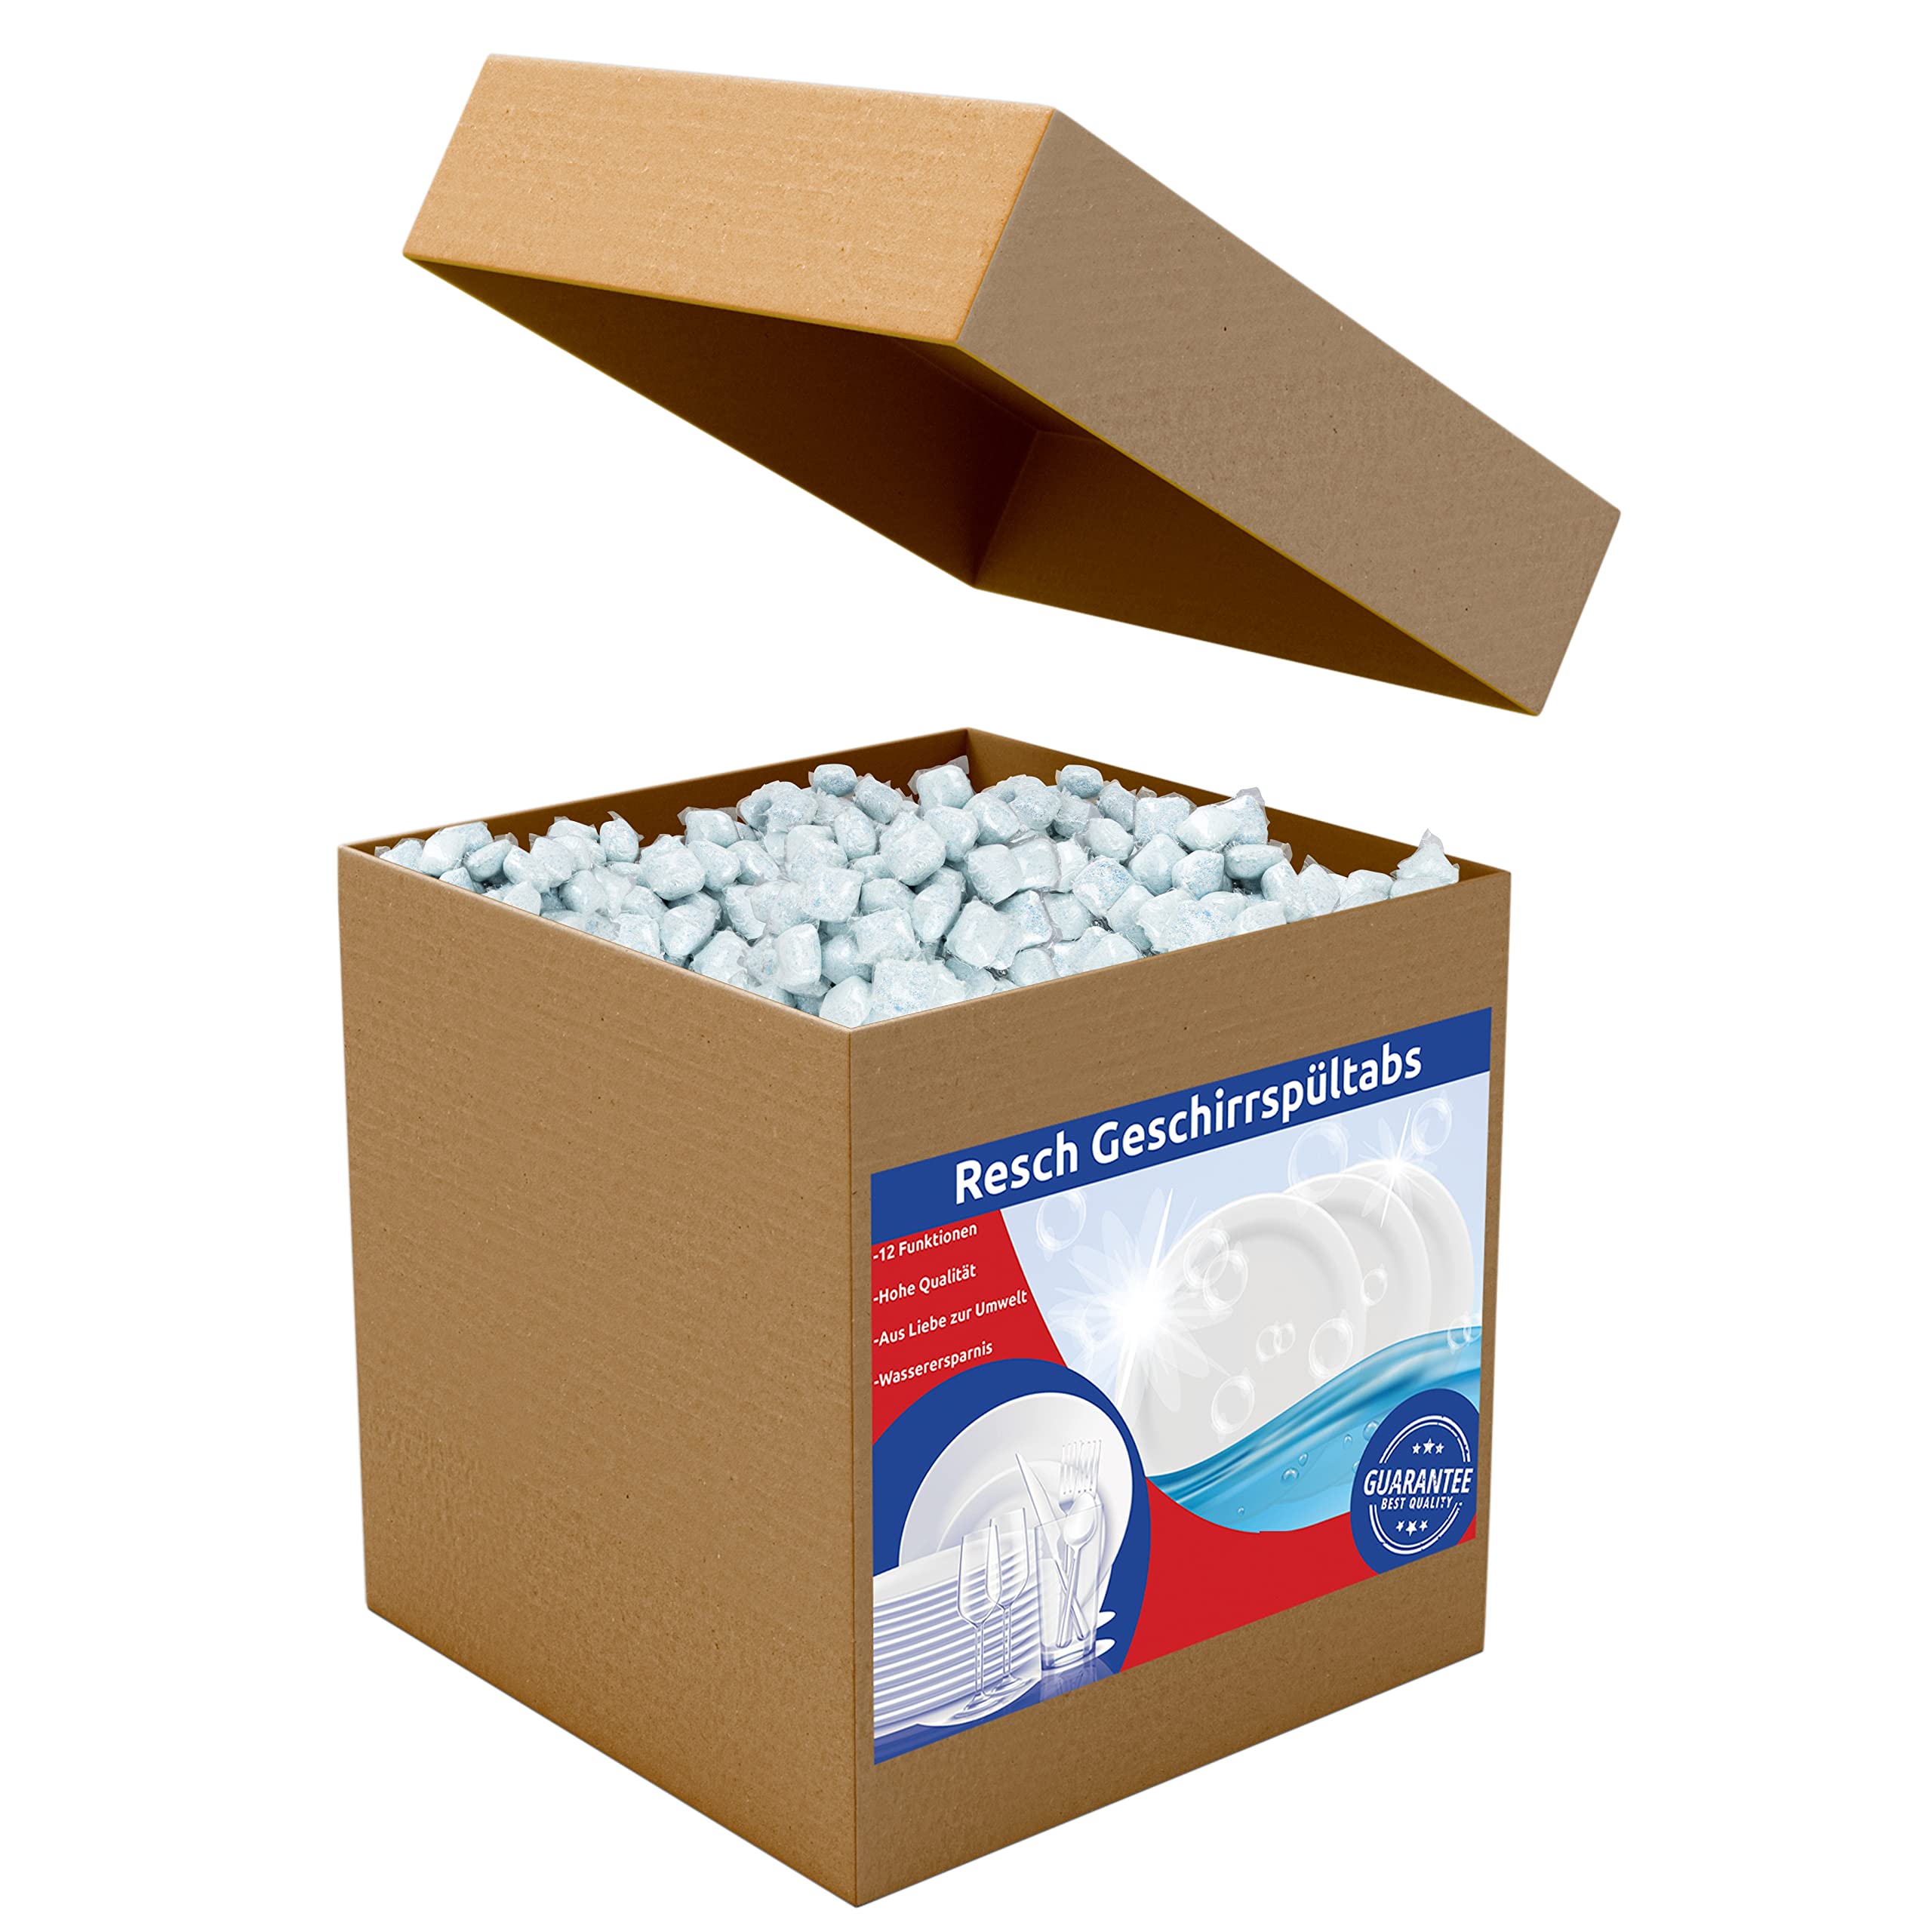 RESCH CLEANIX Spülmaschinentabs - All in One | Gigapack mit 250 Stück (ca 5kg) | Phosphatfrei Tabs | Geschirrspültabs in Folie | Spültabs Spülmaschine